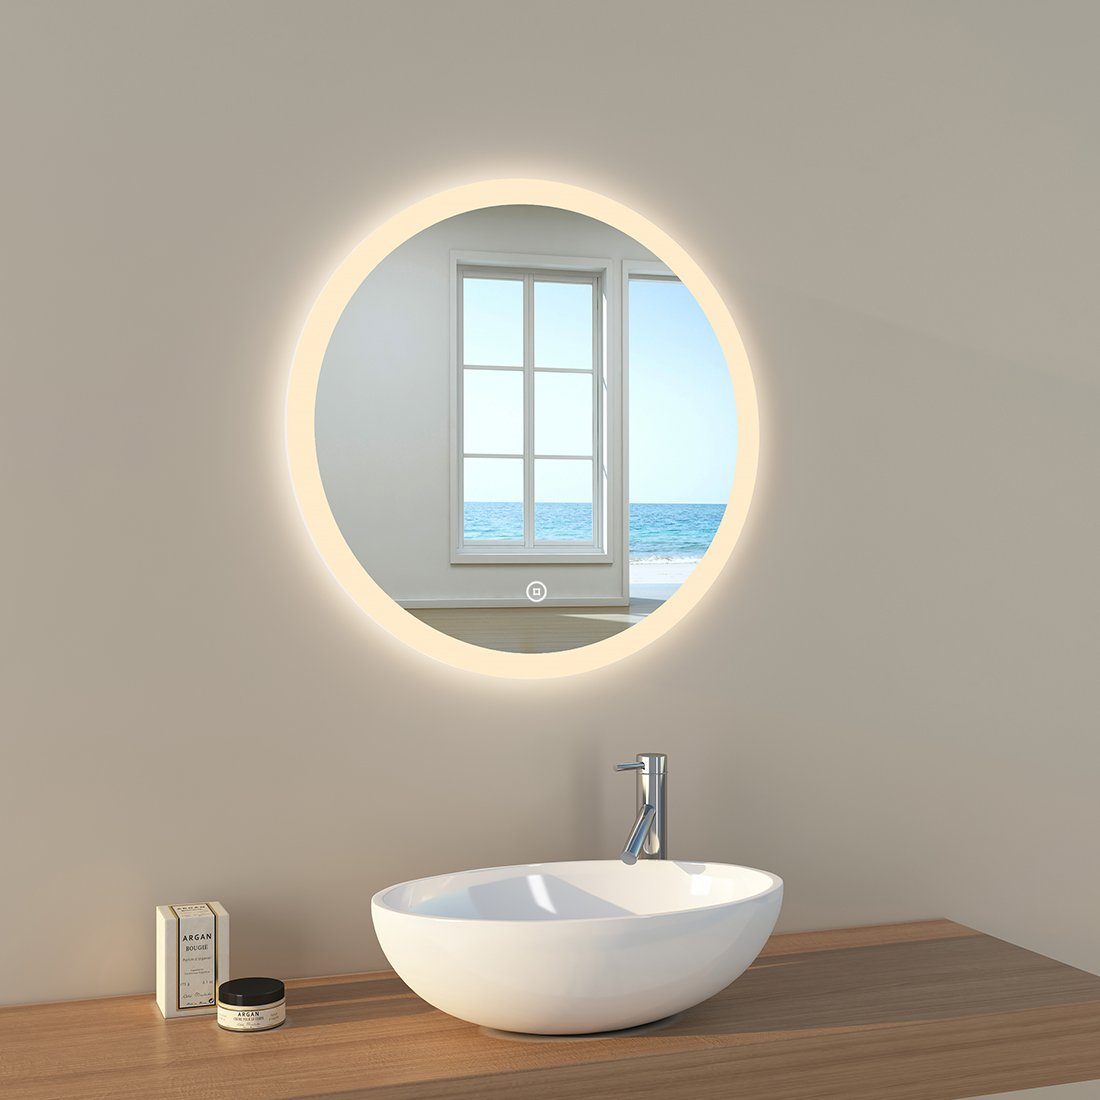 mit A) Badezimmerspiegel, EMKE Badspiegel Beleuchtung, Rund Badspiegel mit LED Touch-Schalter(Type EMKE